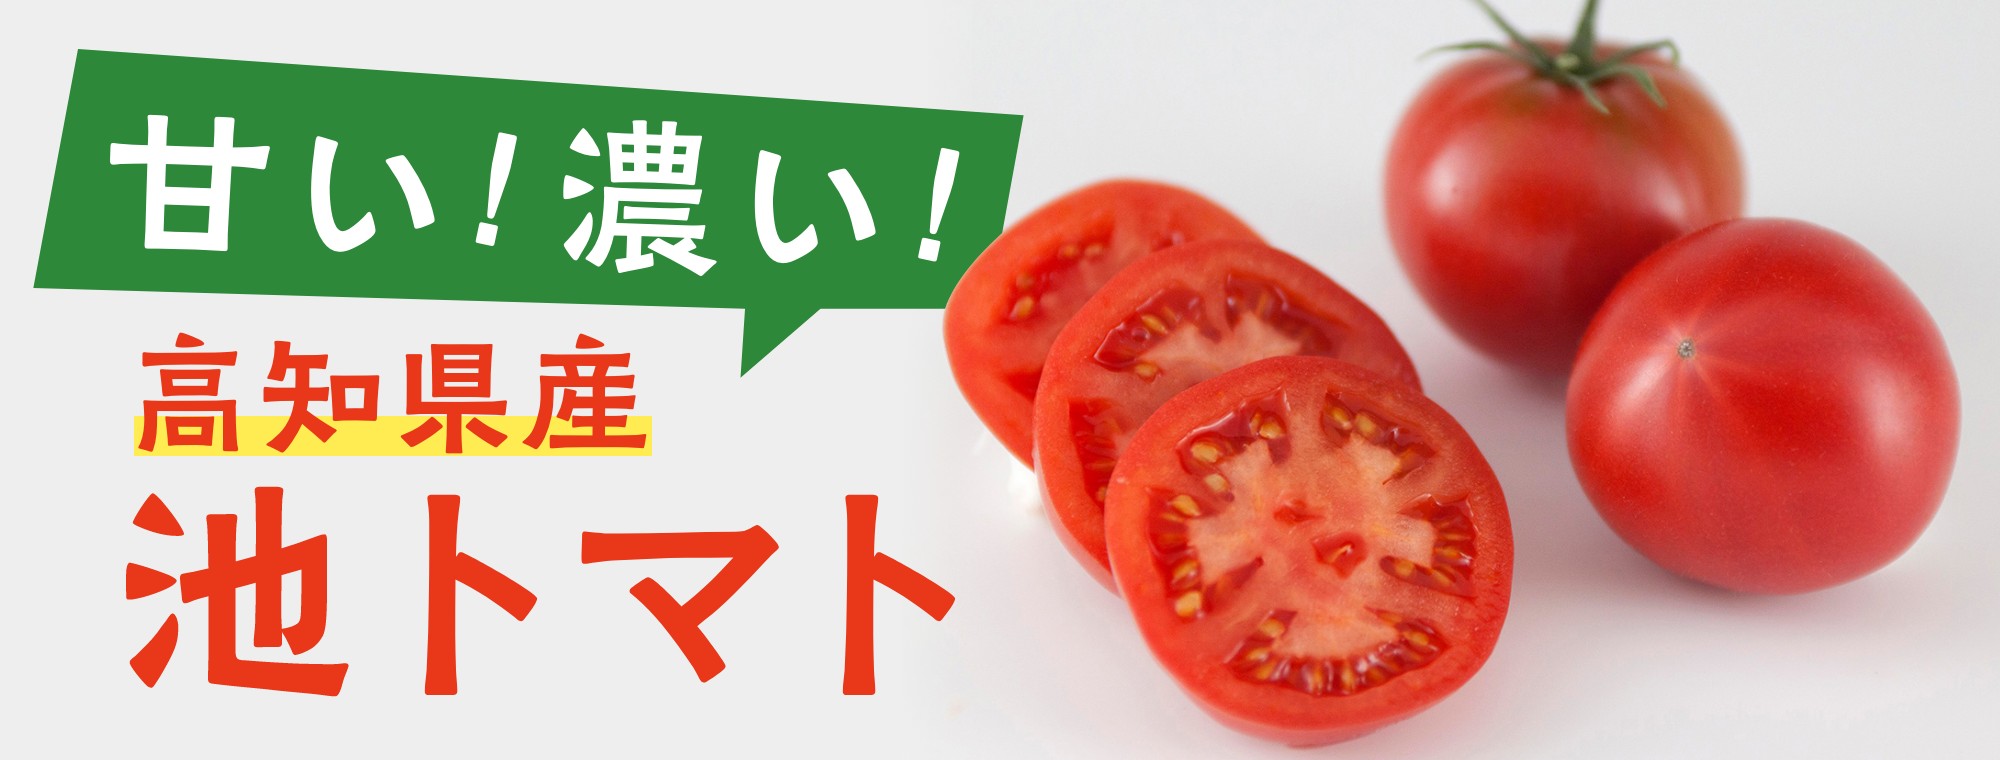 甘い！濃い！糖度をぐ〜んと高めた高知県産池トマト